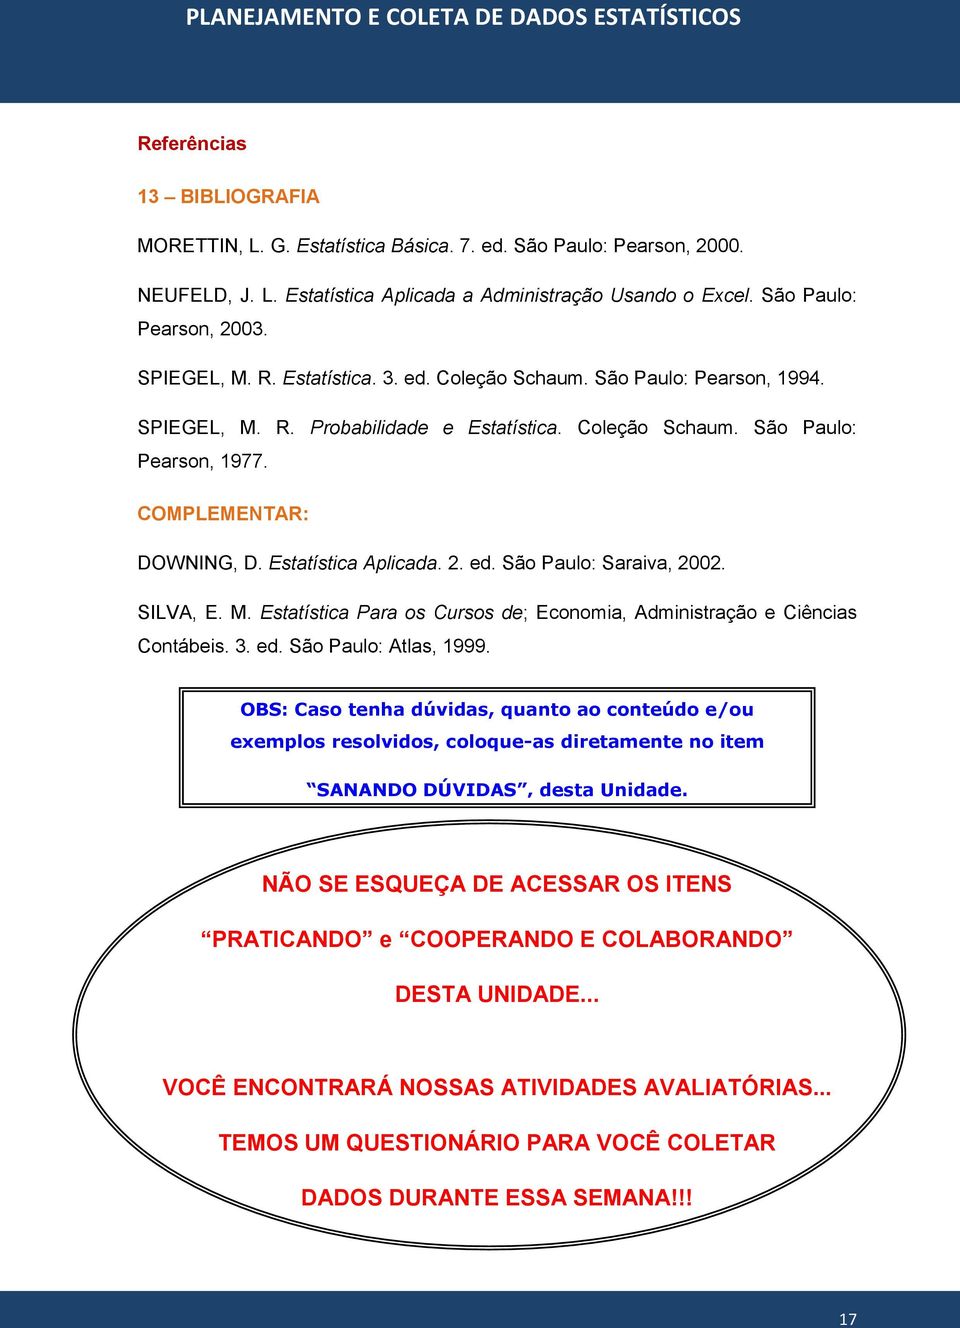 Estatística Aplicada. 2. ed. São Paulo: Saraiva, 2002. SILVA, E. M. Estatística Para os Cursos de; Economia, Administração e Ciências Contábeis. 3. ed. São Paulo: Atlas, 1999.